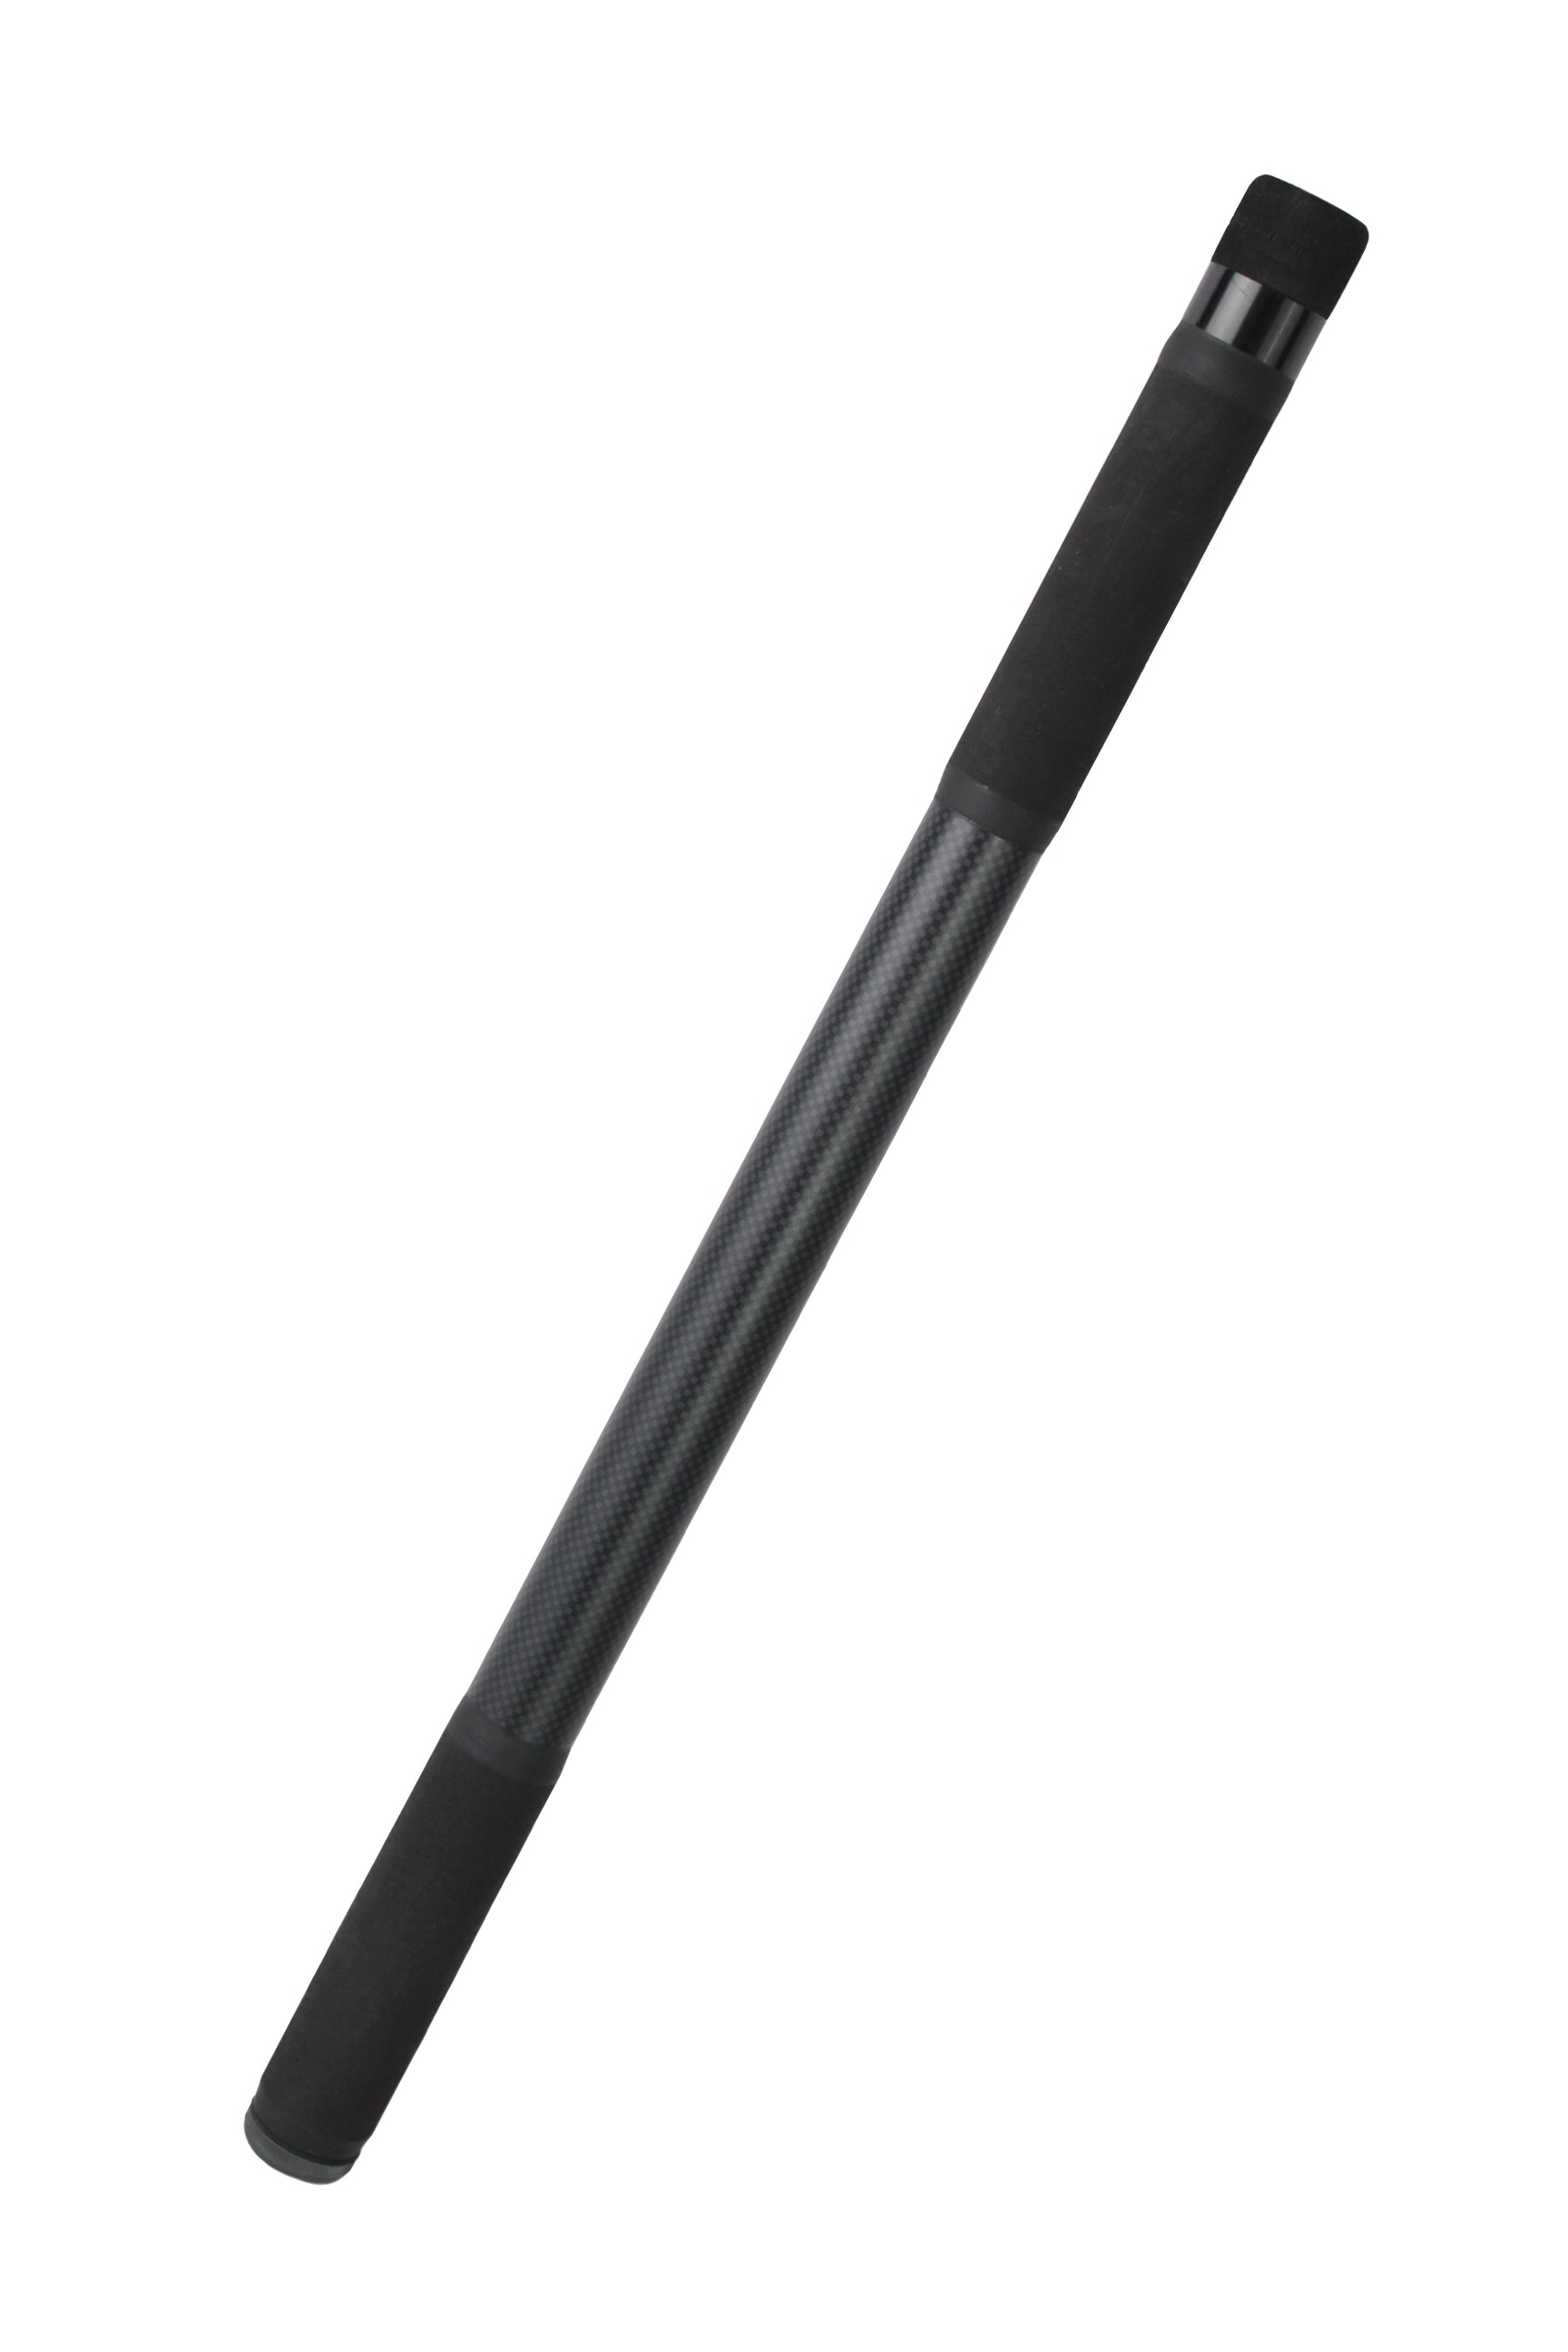 Ручка для подсачека Korum Opportunist Xtnd 2,8м - фото 1